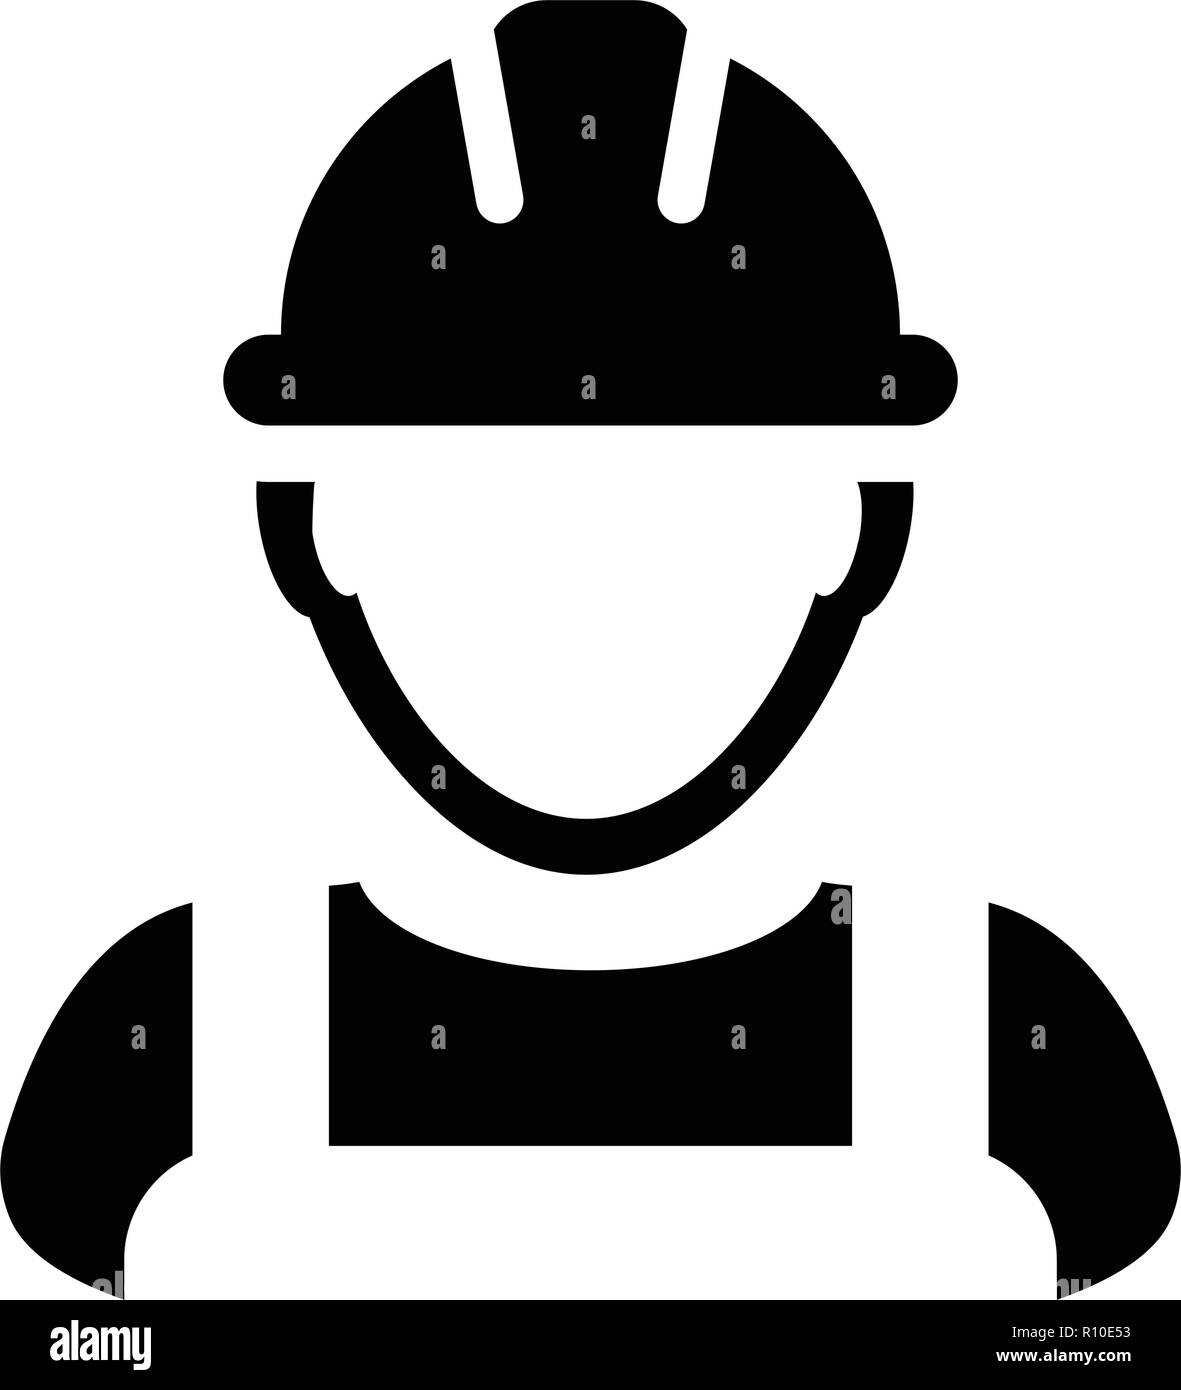 Auftragnehmer Symbol Vektor männlichen Arbeitnehmer person Profil Avatar  mit Schutzhelm Helm in Glyph Piktogramm Abbildung Stock-Vektorgrafik - Alamy